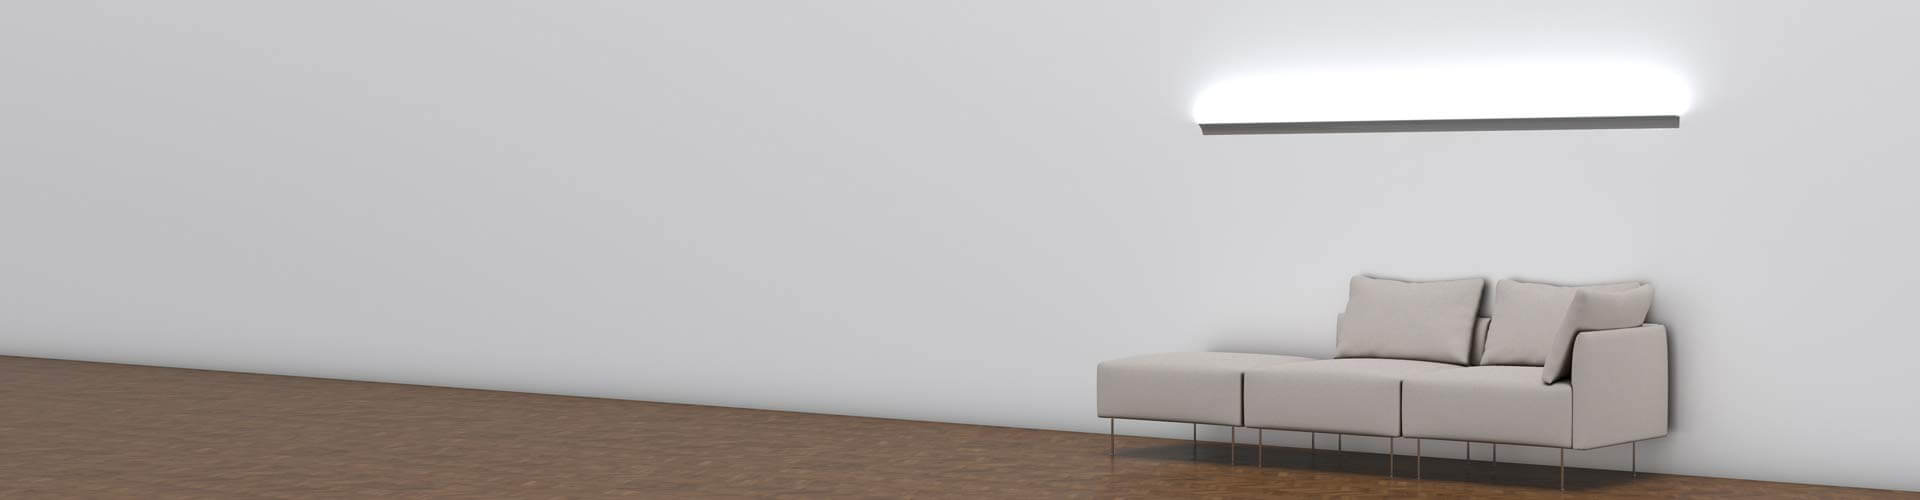 Lichtvoutenprofil WERKIN neutralweiß leuchtend über einem Sofa